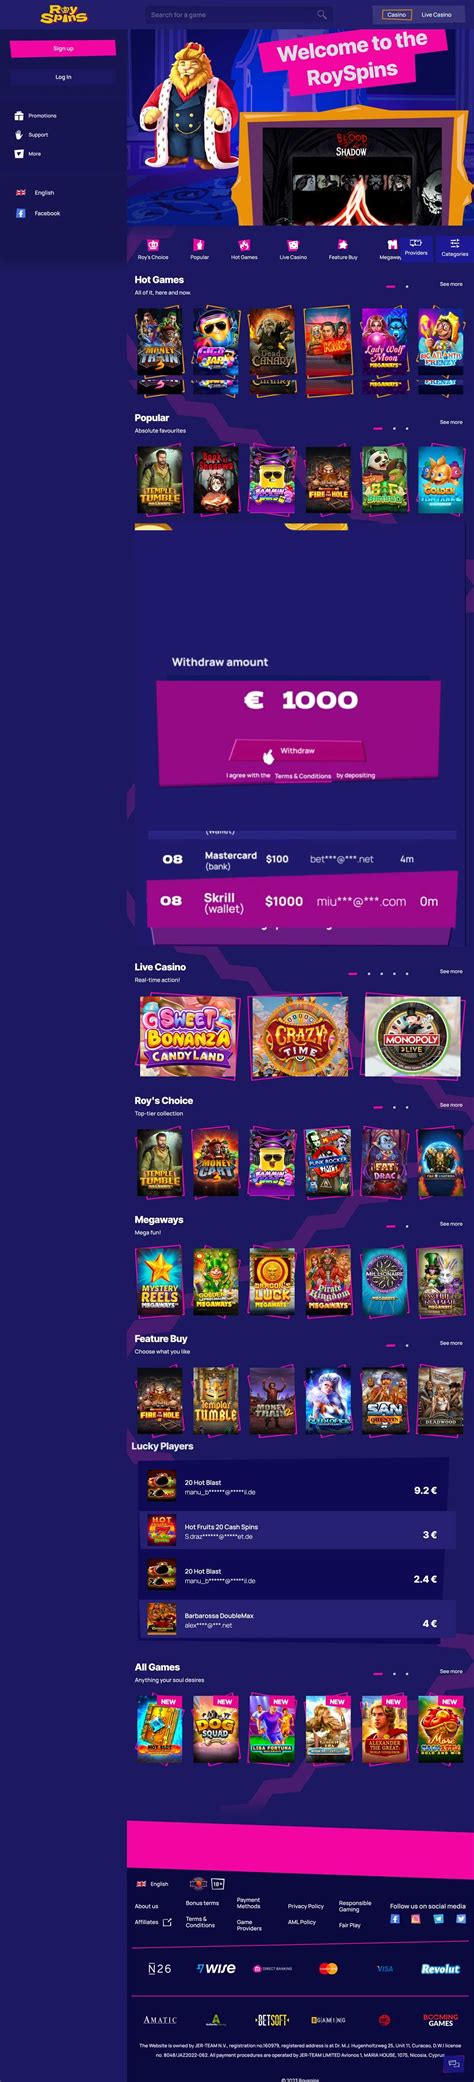 Royspins casino app